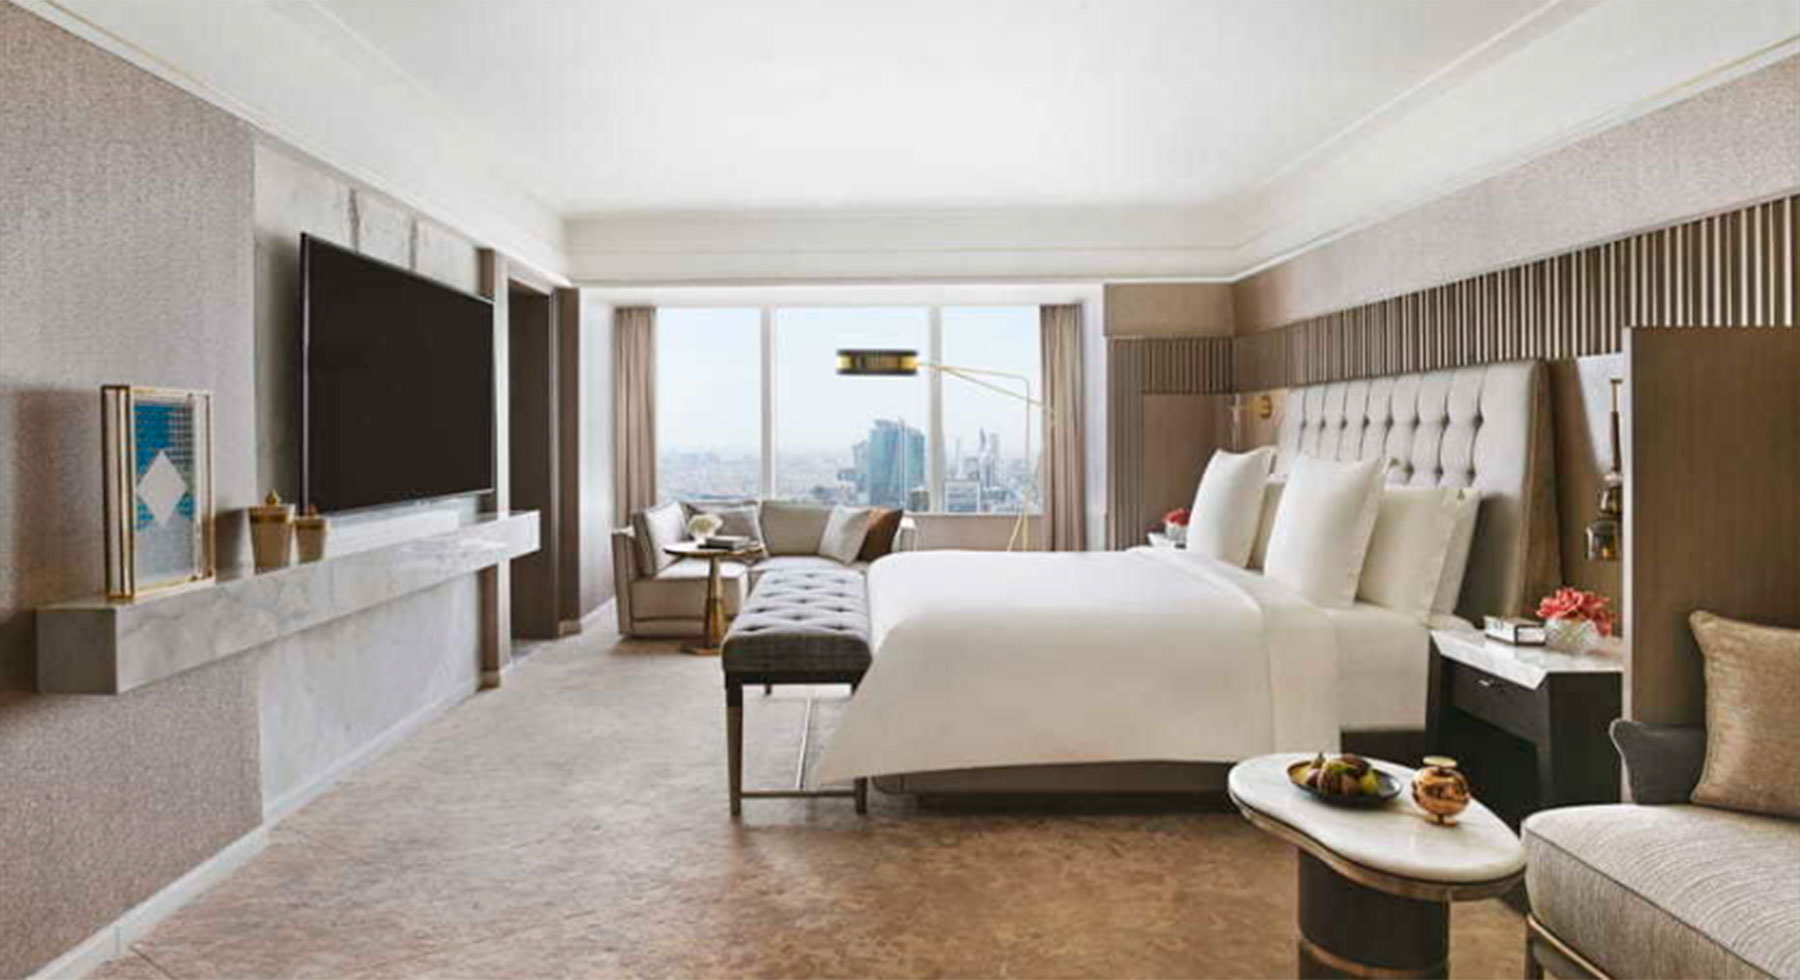 Suite del hotel donde se alojan CR7 y Georgina / Four Seasons